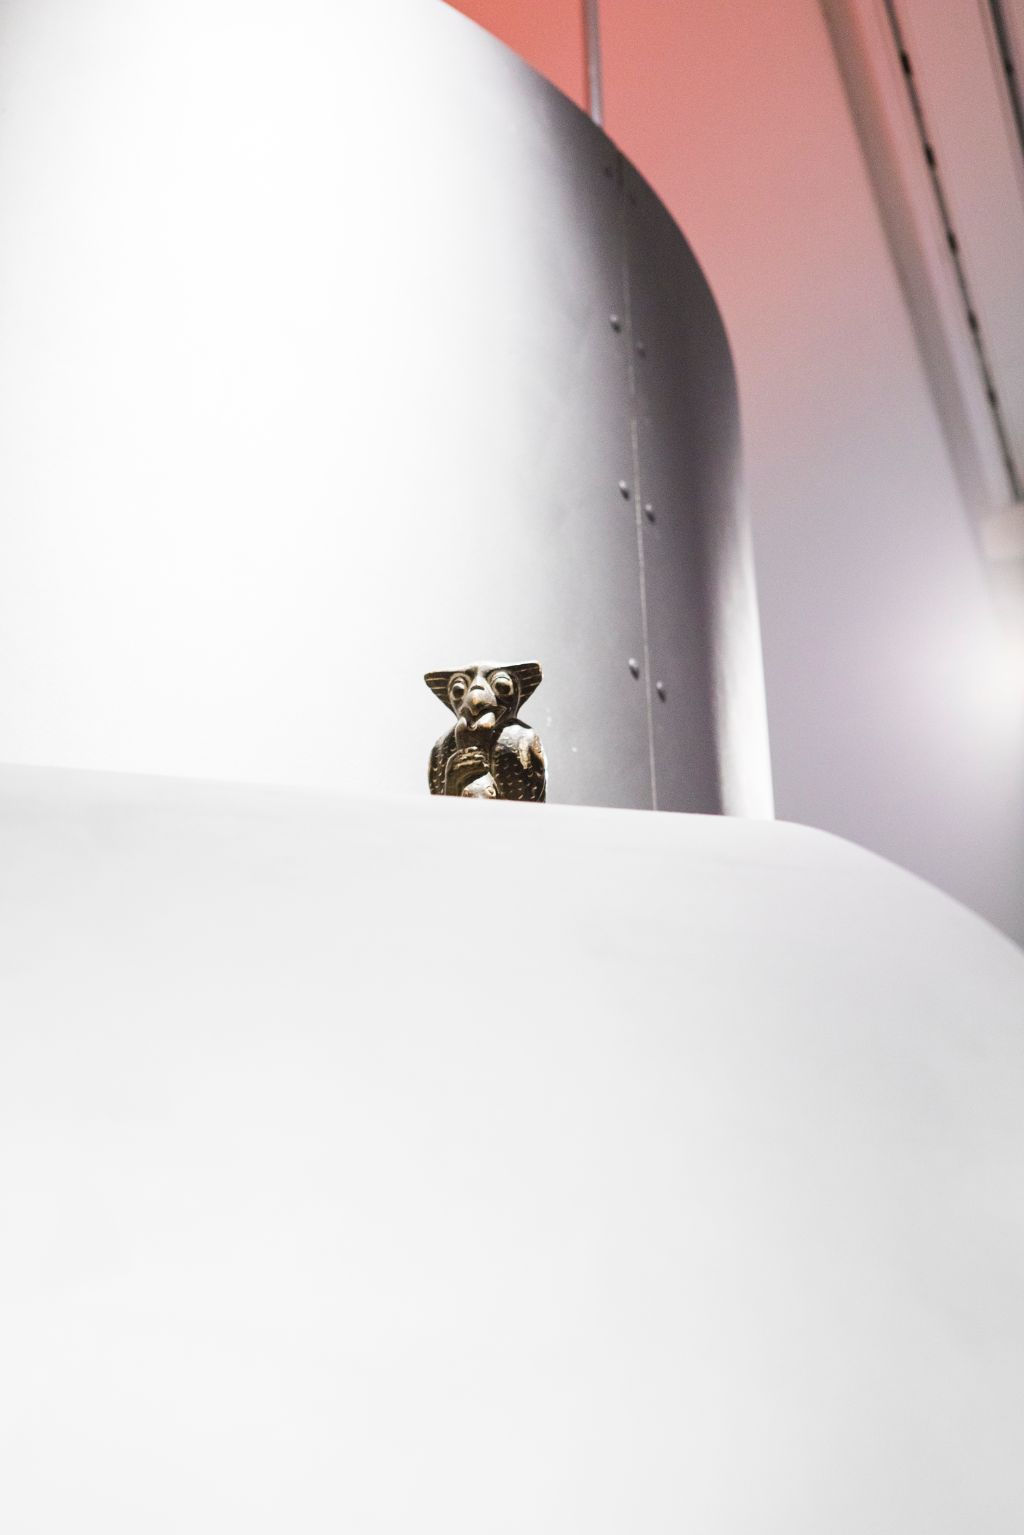 Das Bild zeigt eine Nahaufnahme eines Raketenteils in der Ausstellung «Sonne, Mond und Sterne». Auf einer Röhre sitzt eine kleine Eule.